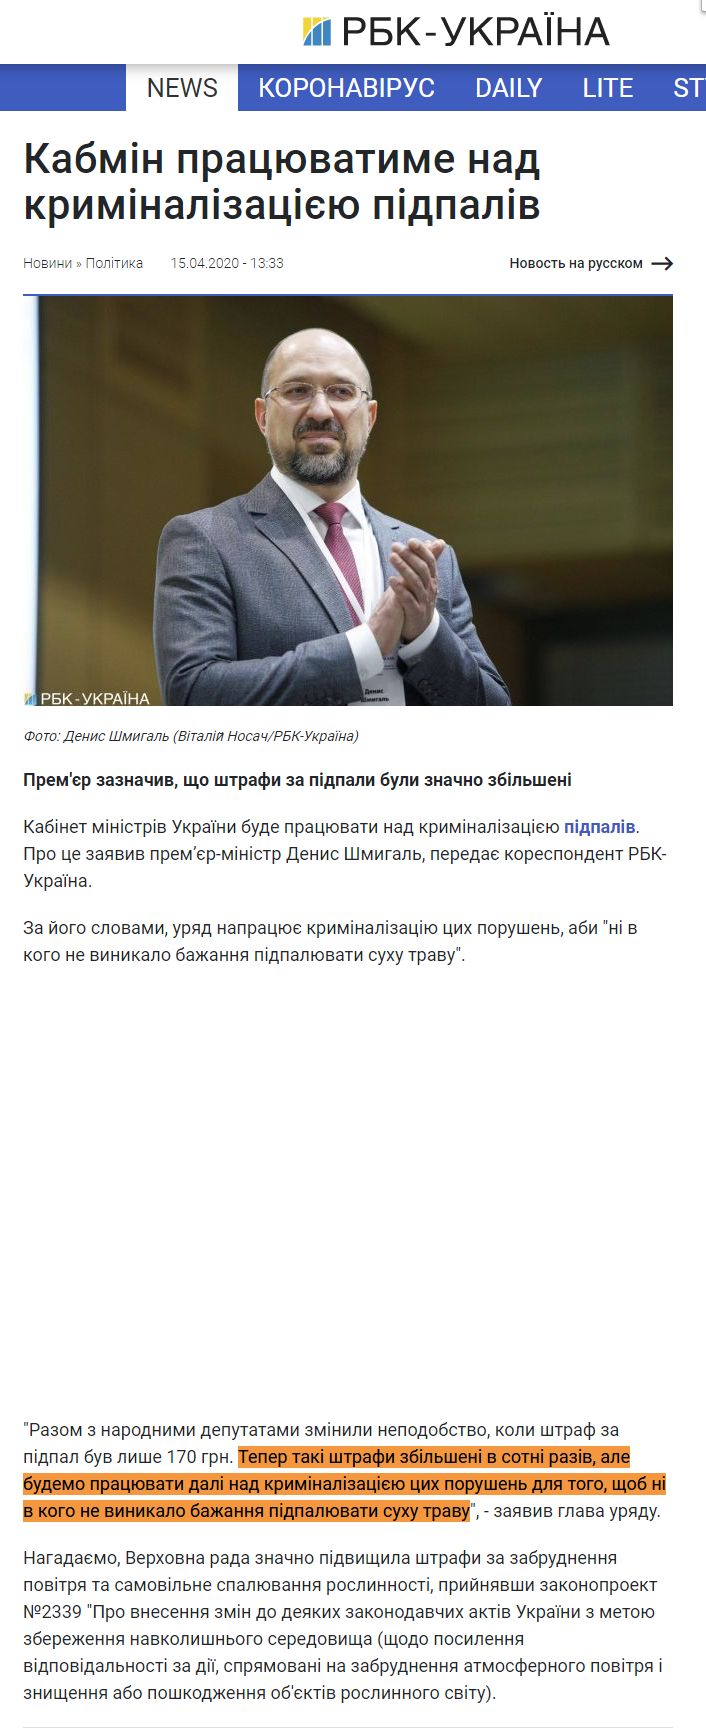 https://www.rbc.ua/ukr/news/nabsovet-naftogaza-rassmotrit-pretenzii-gazpromu-1586946521.html